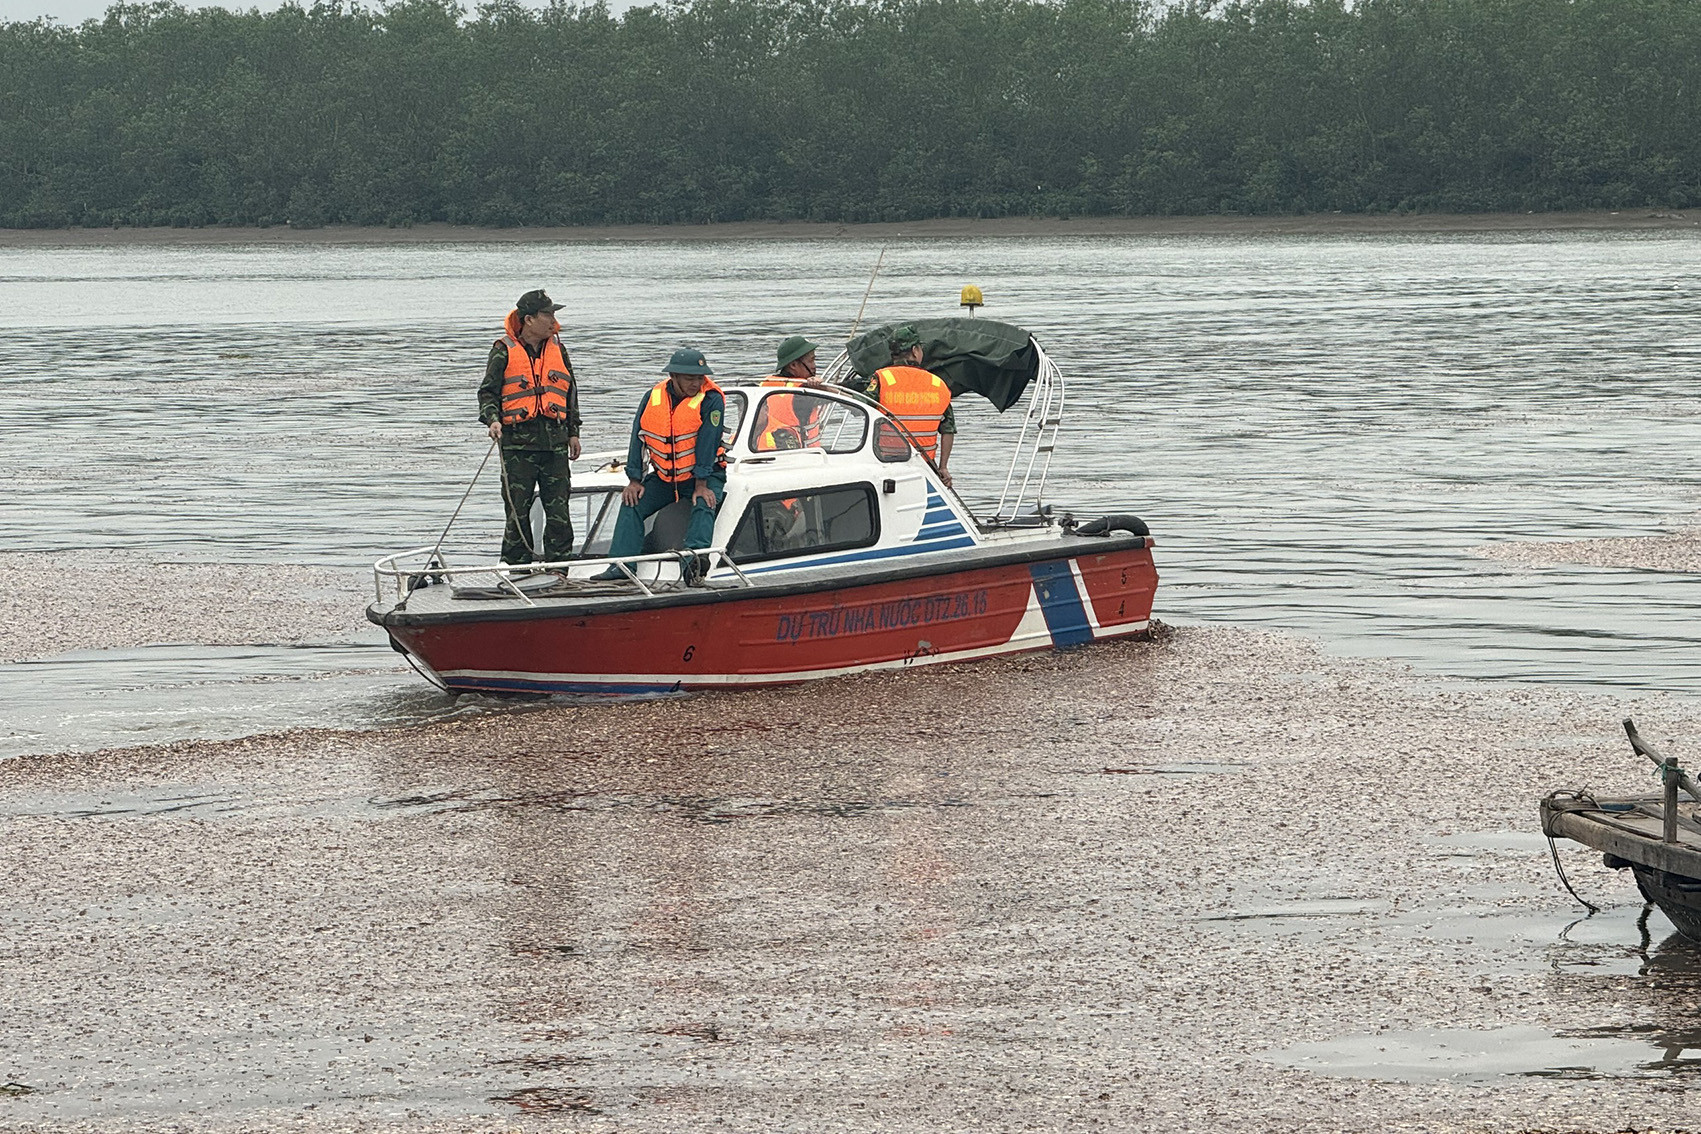  Lật thuyền lúc rạng sáng, 4 người mất tích trên sông 